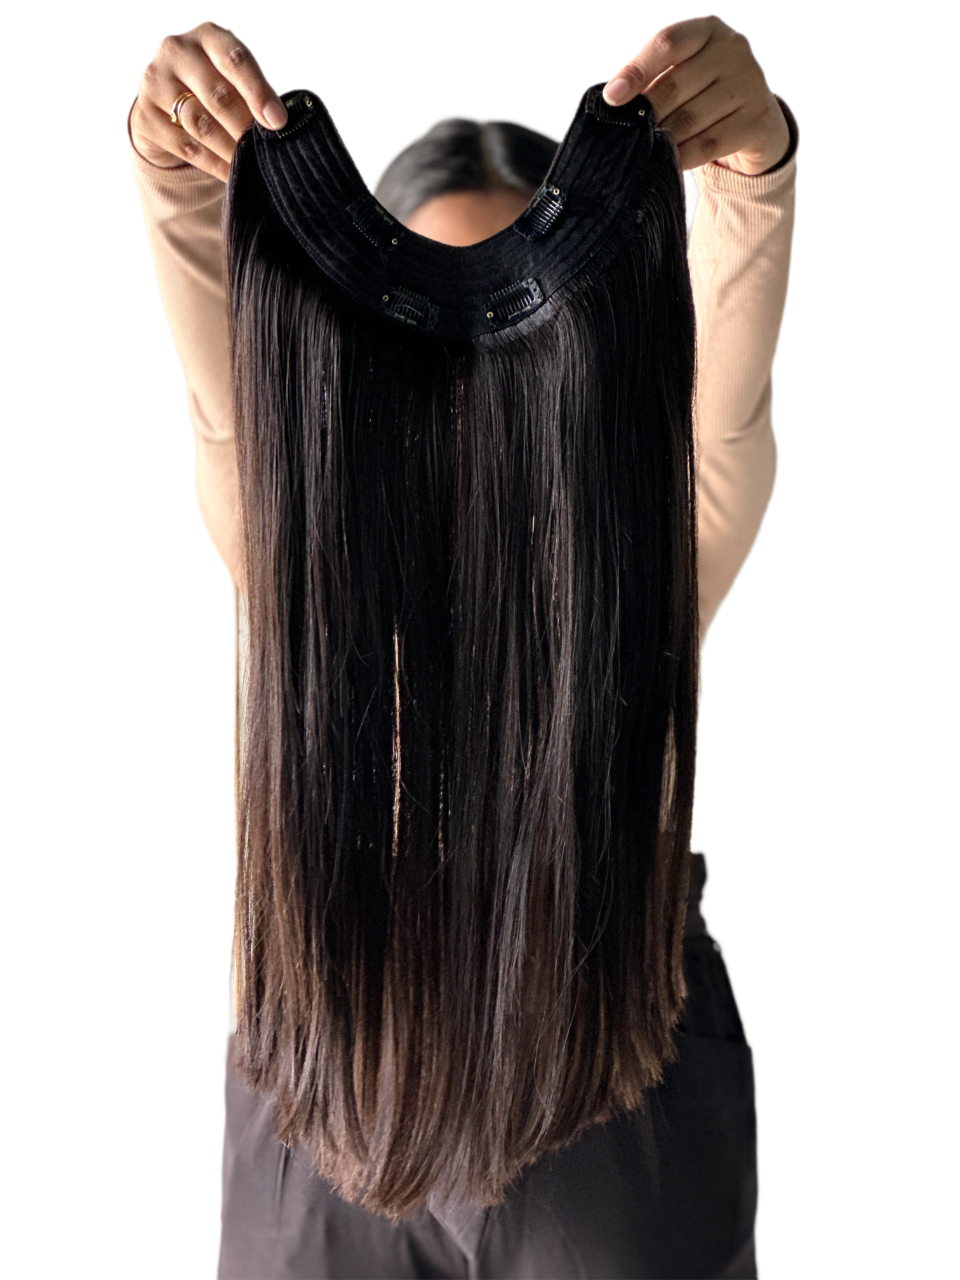 U-Shaped Volumizers  HairOriginals 20 Inch Natural Wavy Natural Black